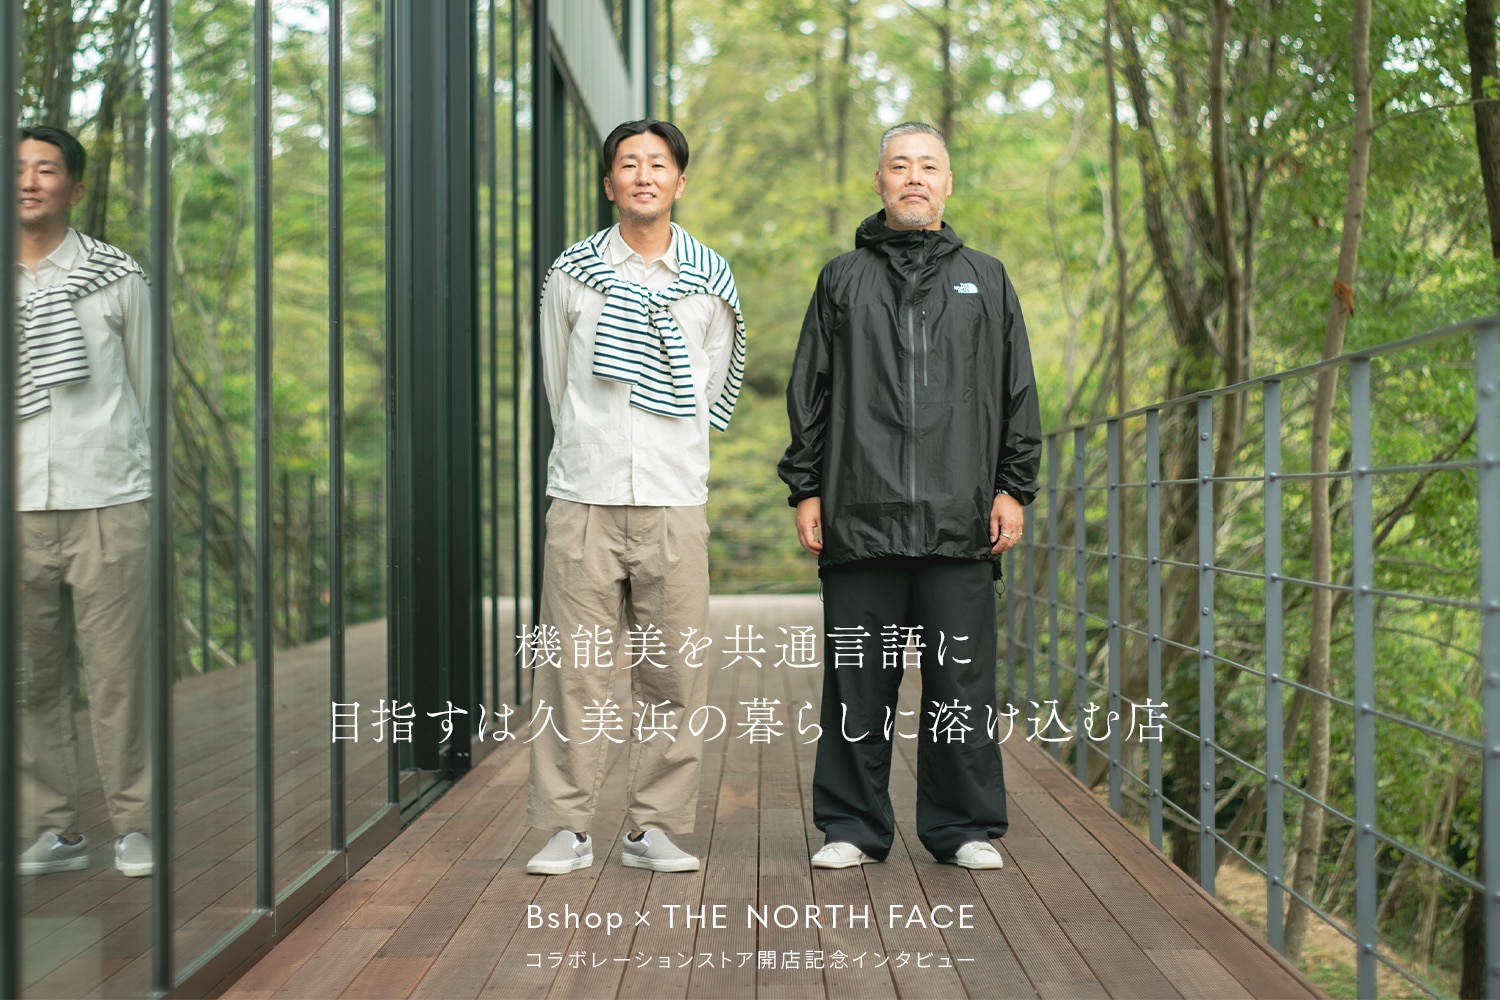 Bshop × THE NORTH FACE 対談ページ公開